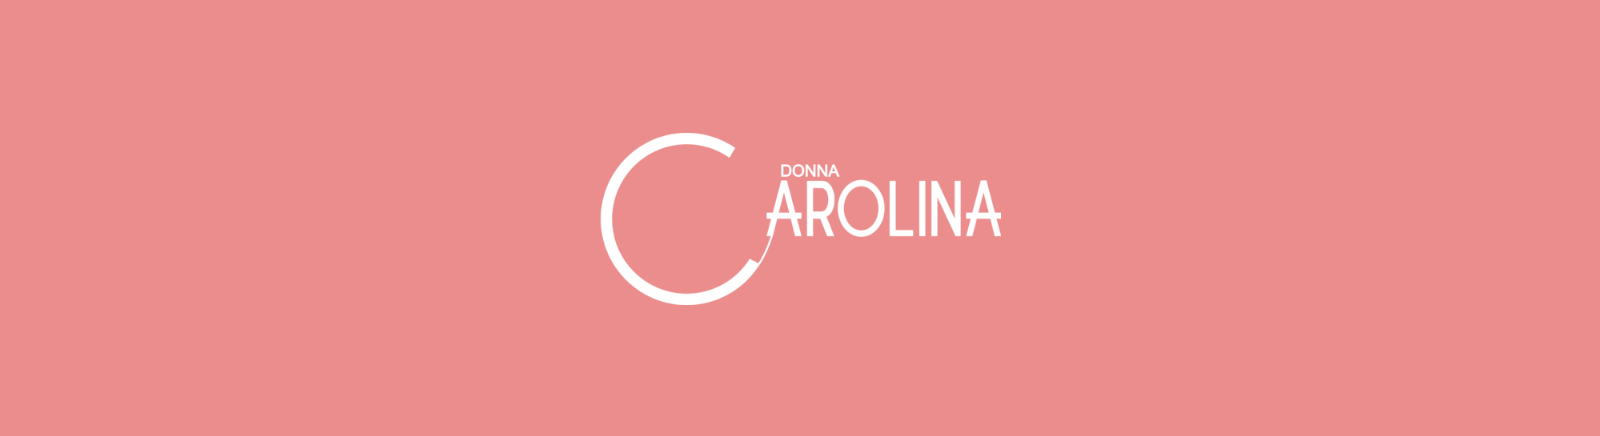 Prange: Donna Carolina Combat Boots für Damen online shoppen